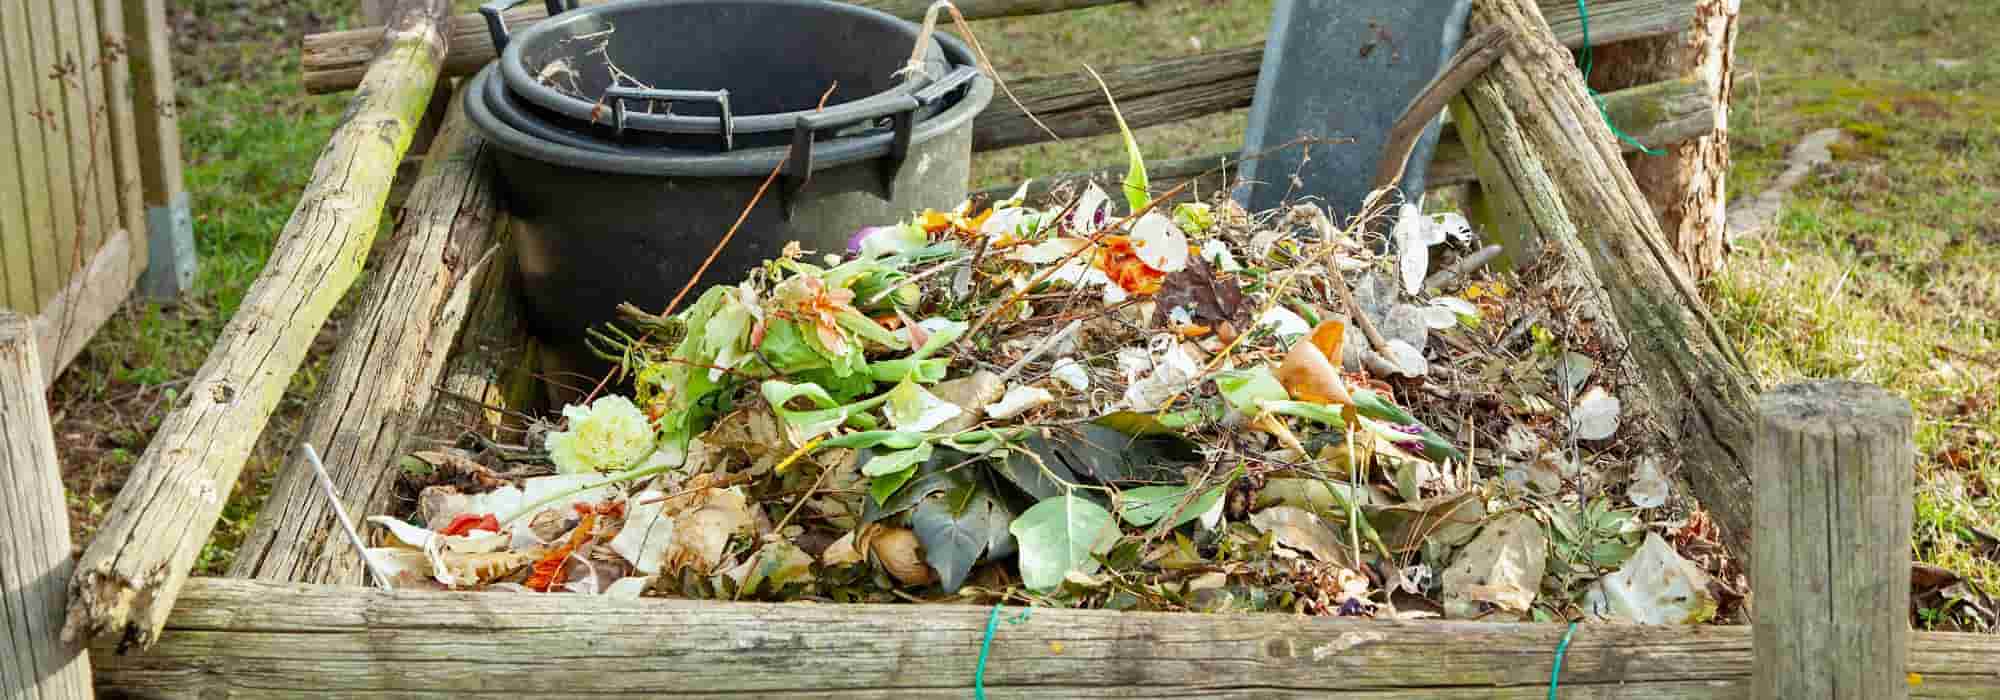 Activateurs de compost naturels : quand et comment les utiliser ?